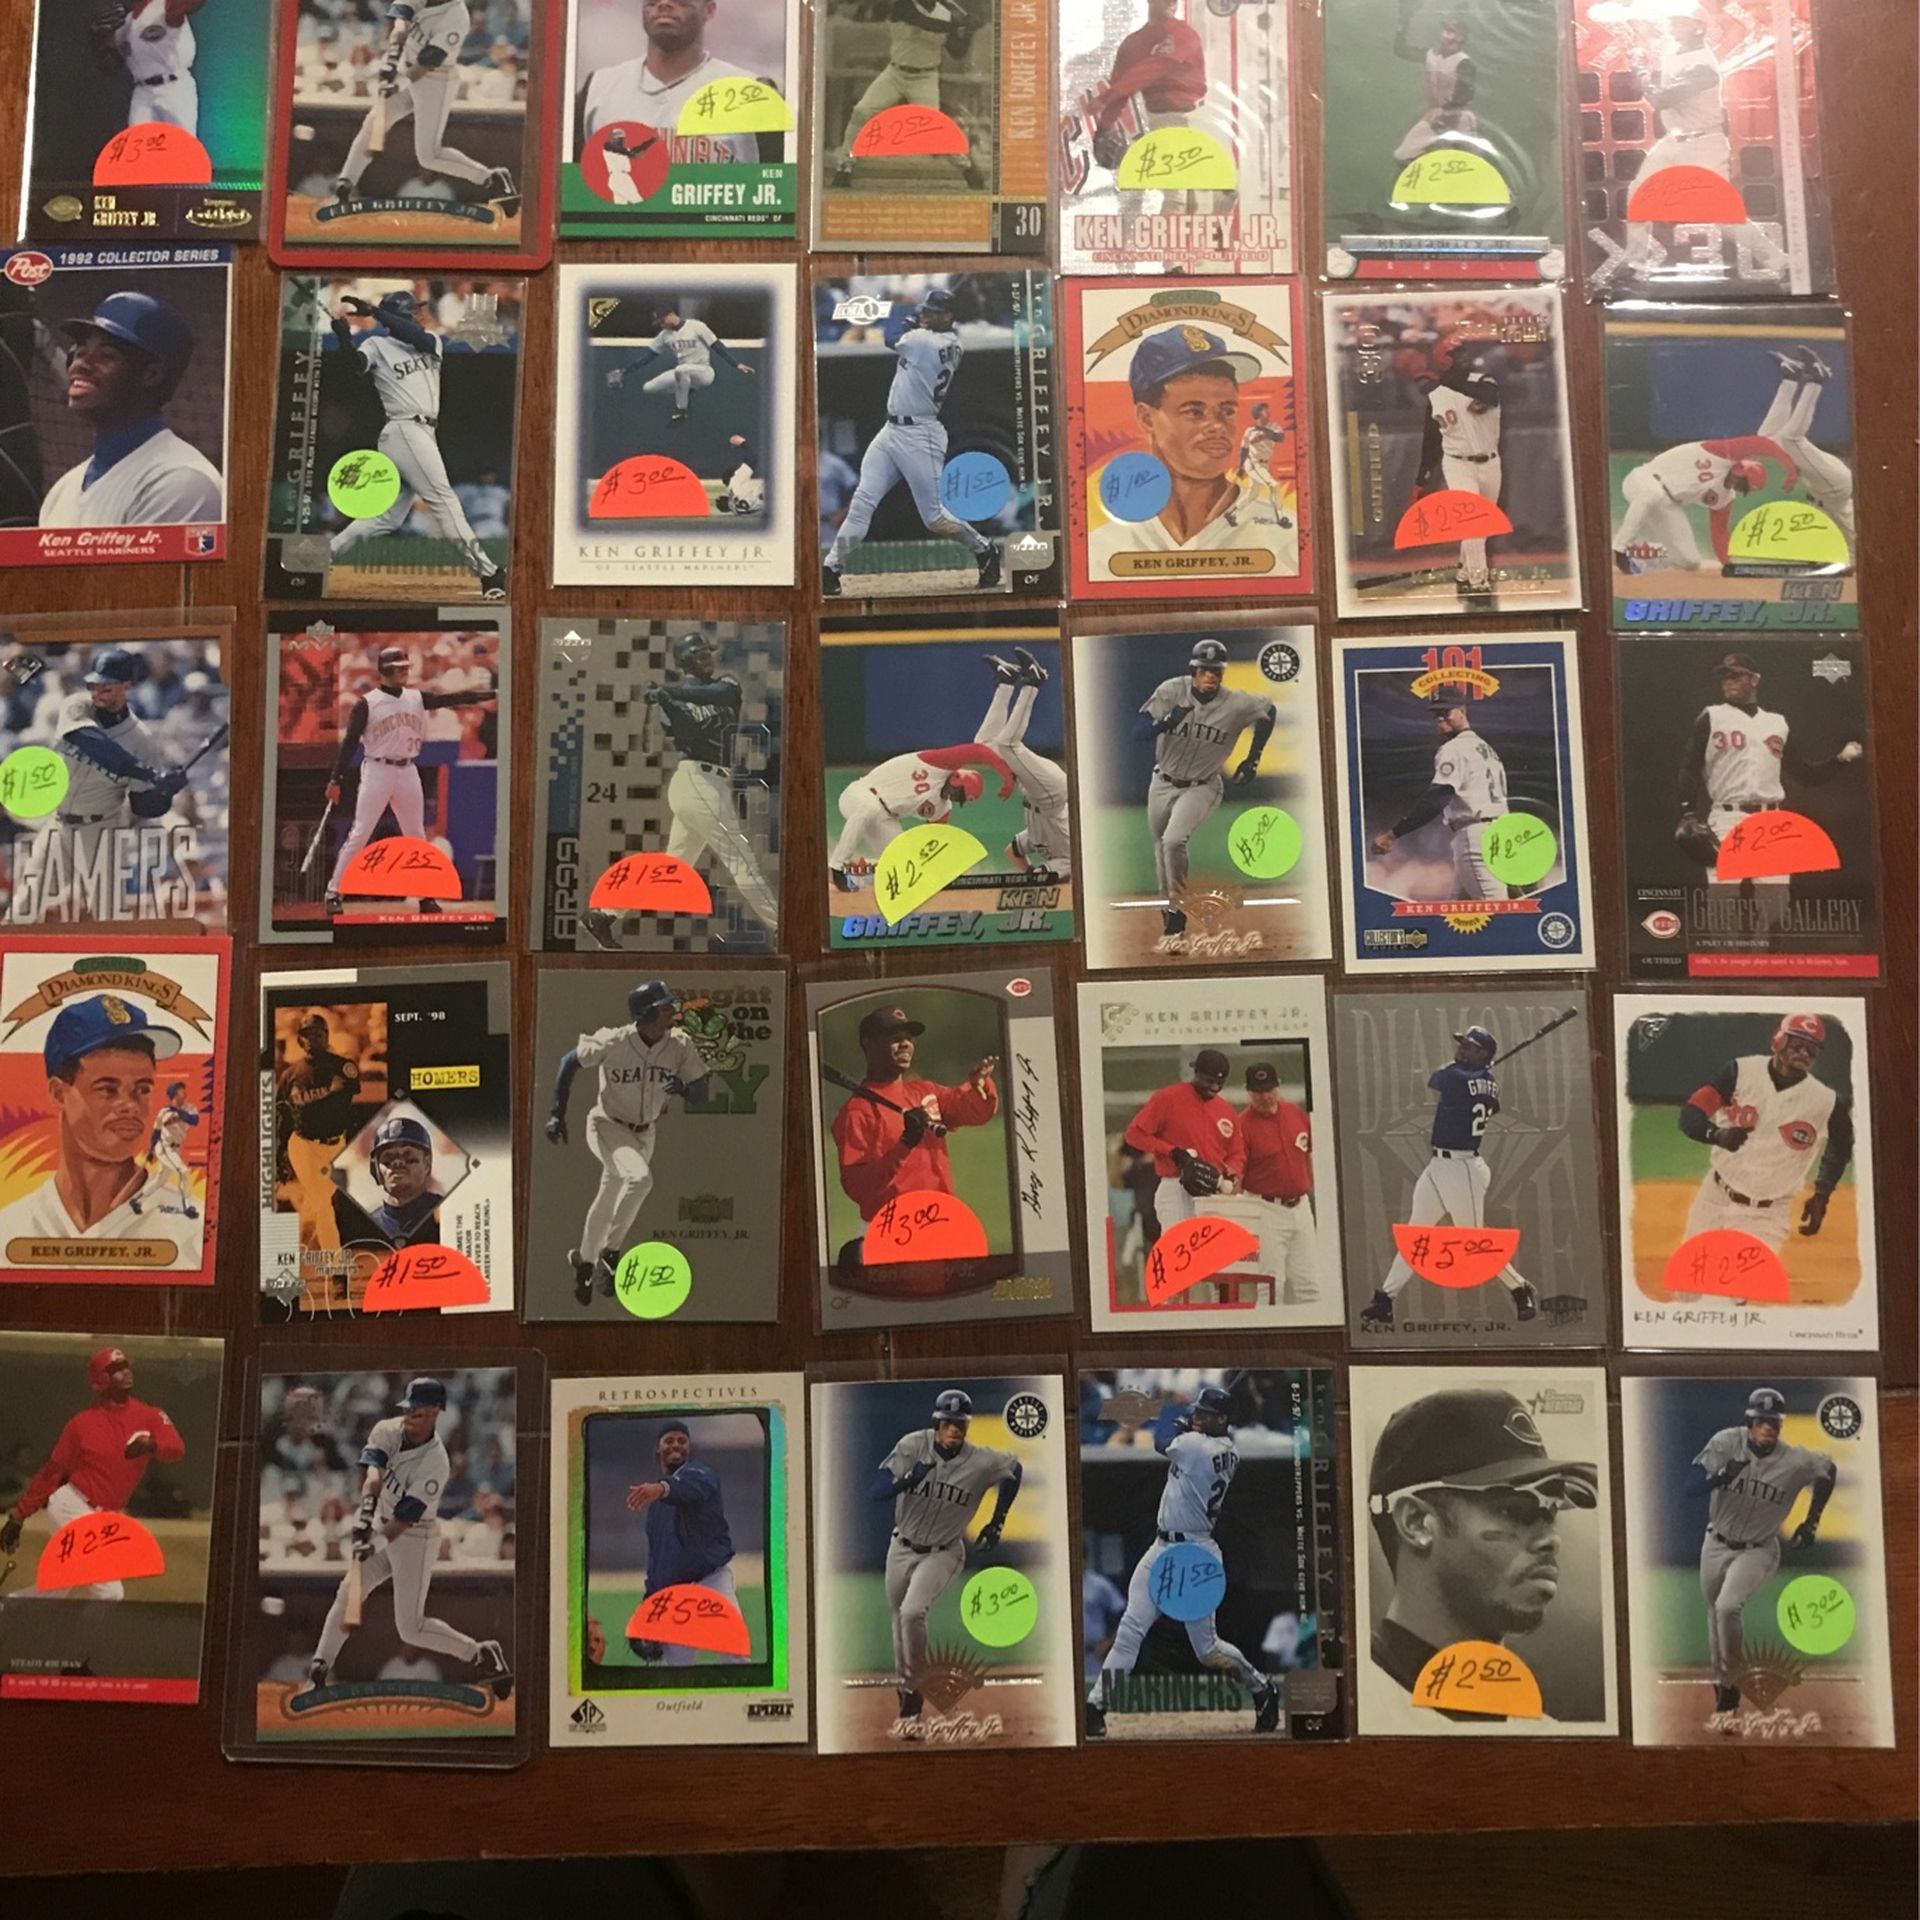 Baseball Ken Griffey Jr. cards